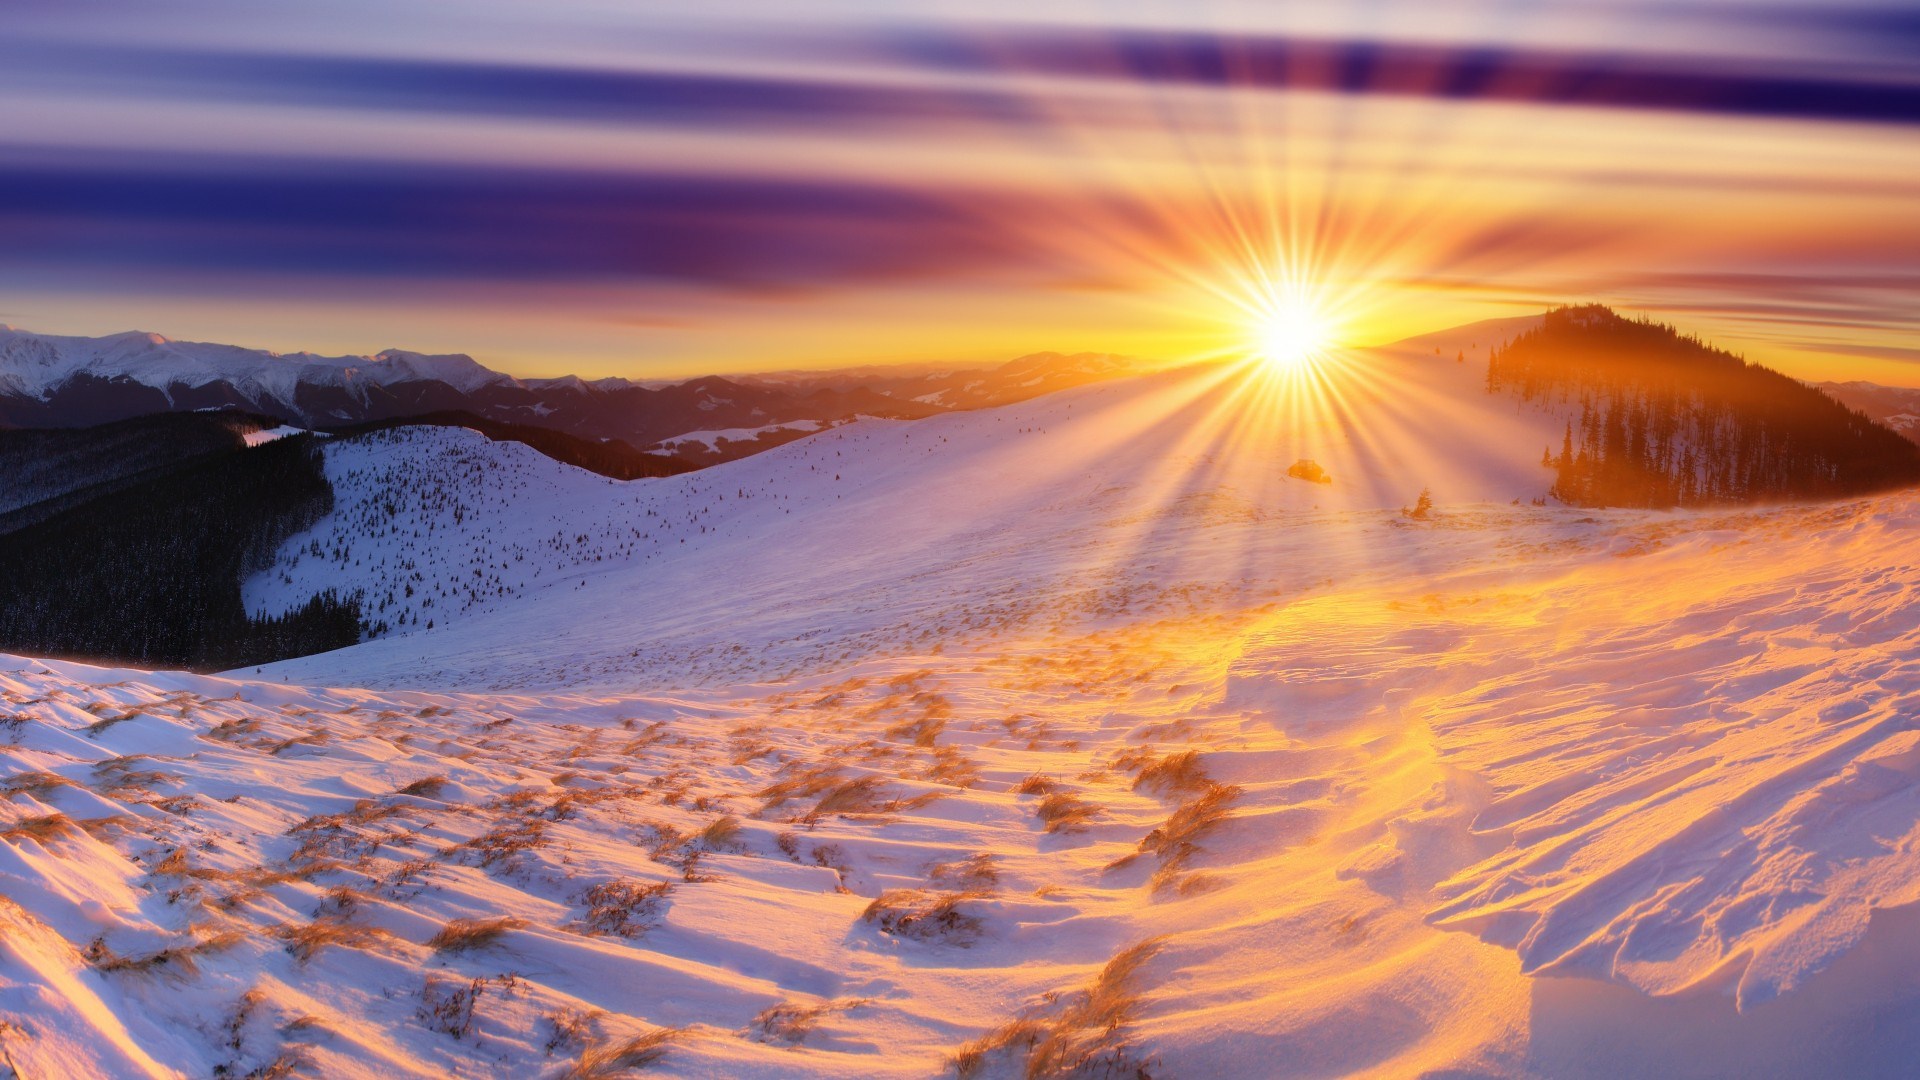 glorious-sunrise-in-winter-hd-wallpaper-519769.jpg